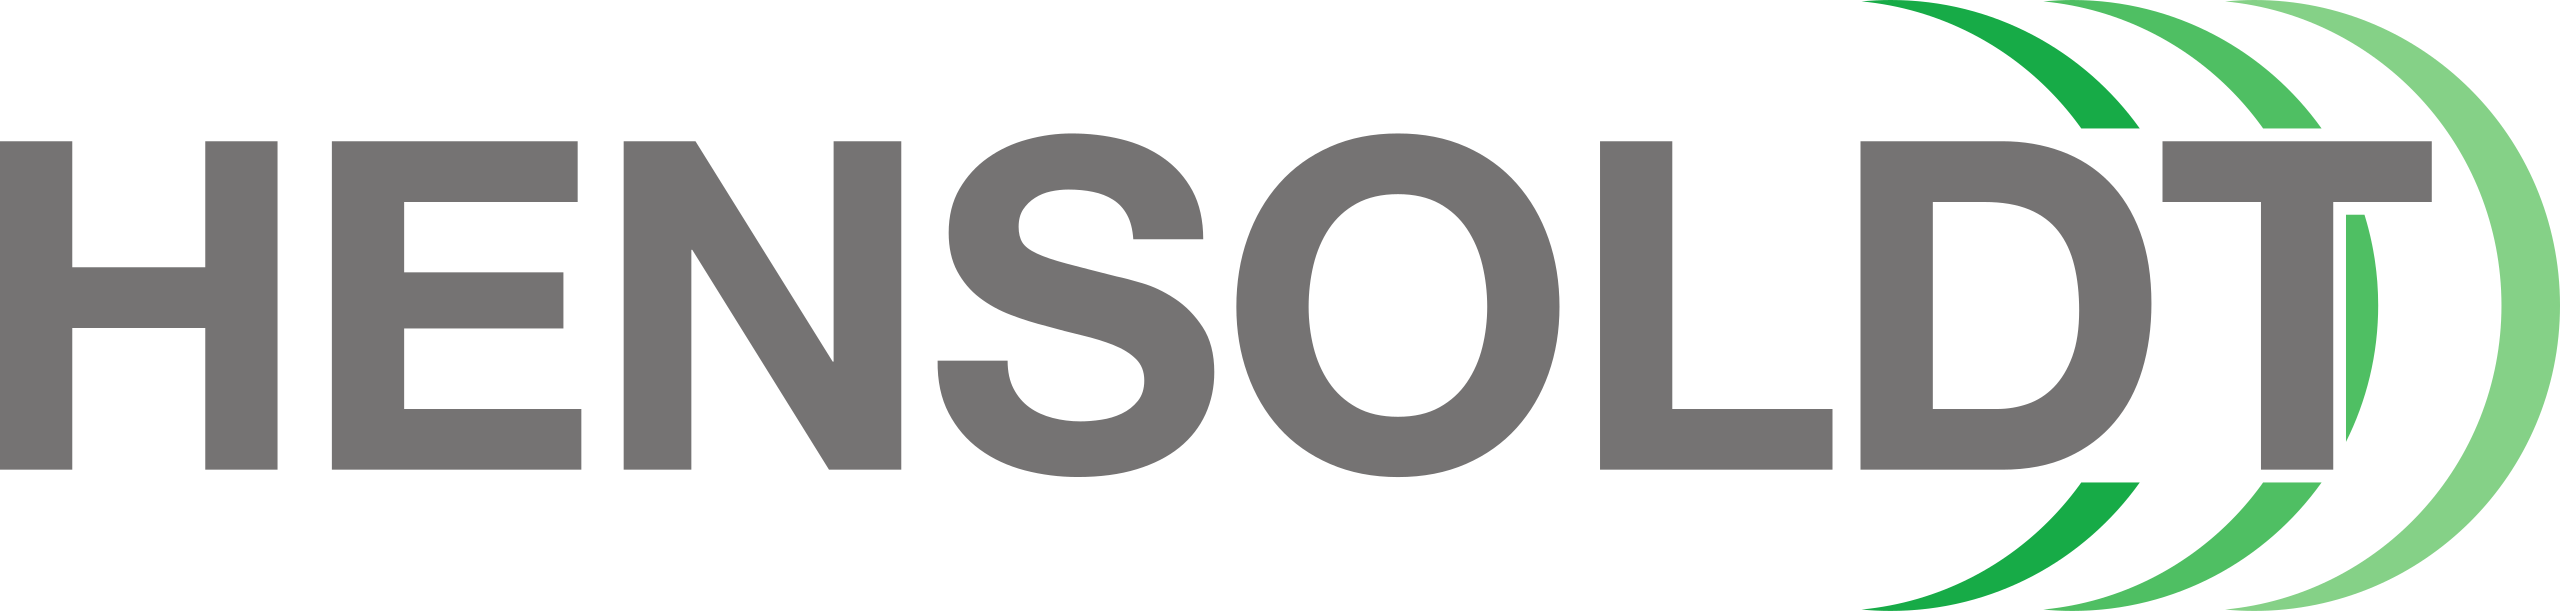 HENSOLDT Brand Logo